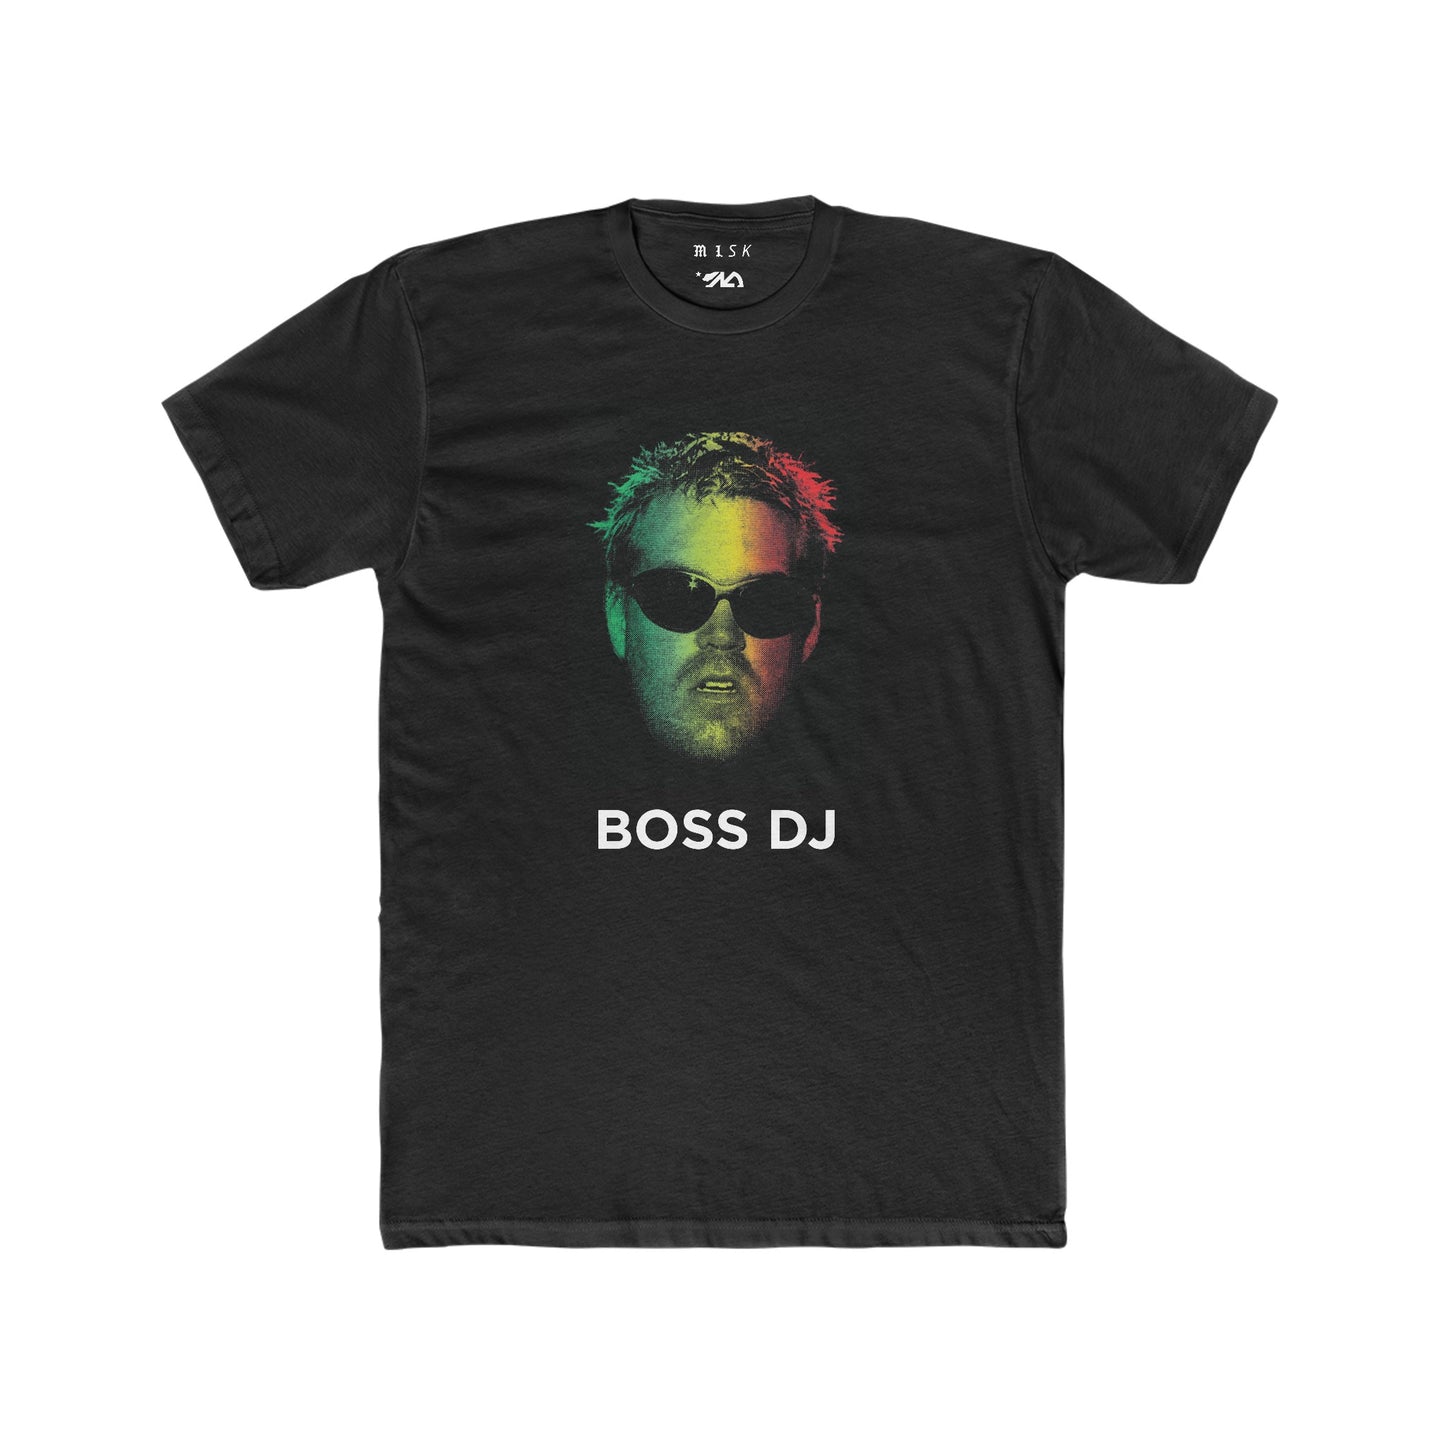 BOSS DJ / RED - GOLD - GREEN